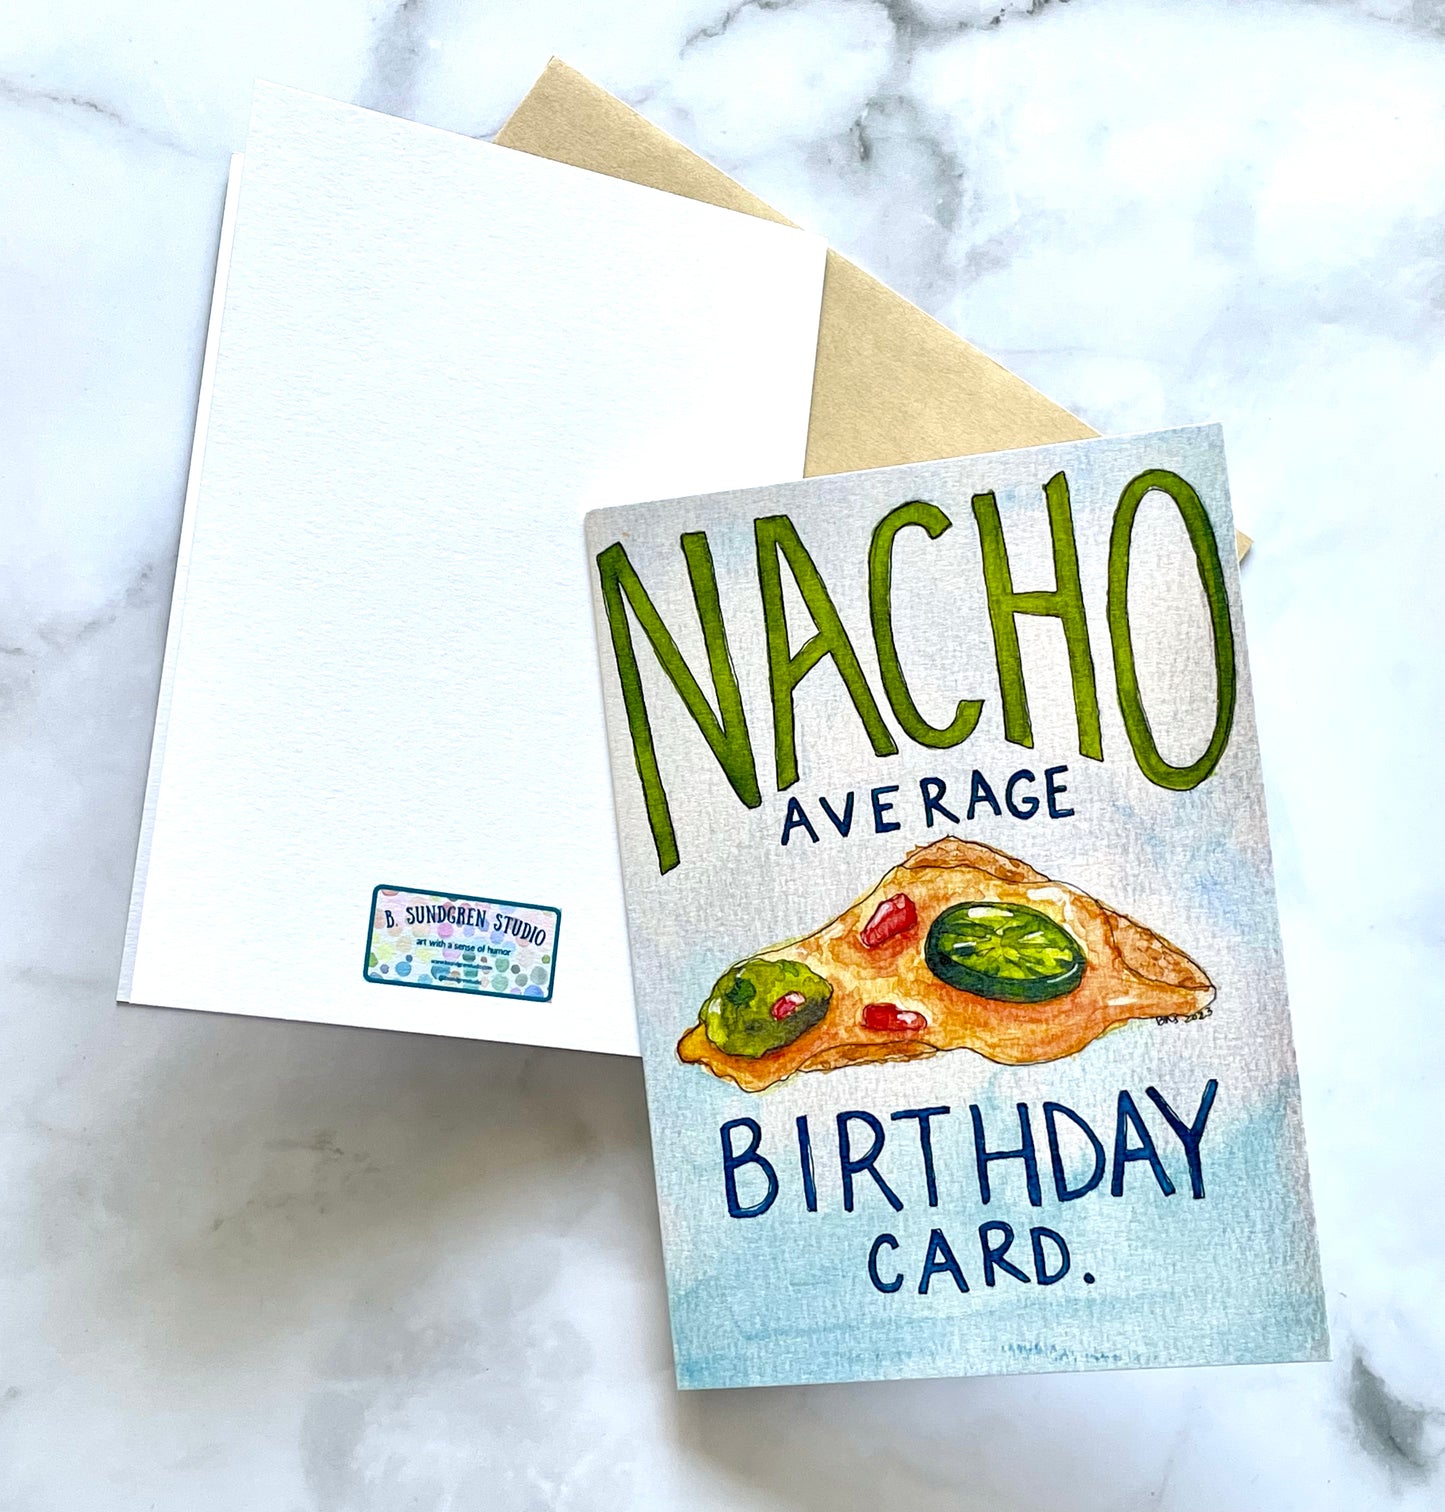 Nacho Average Birthday Card